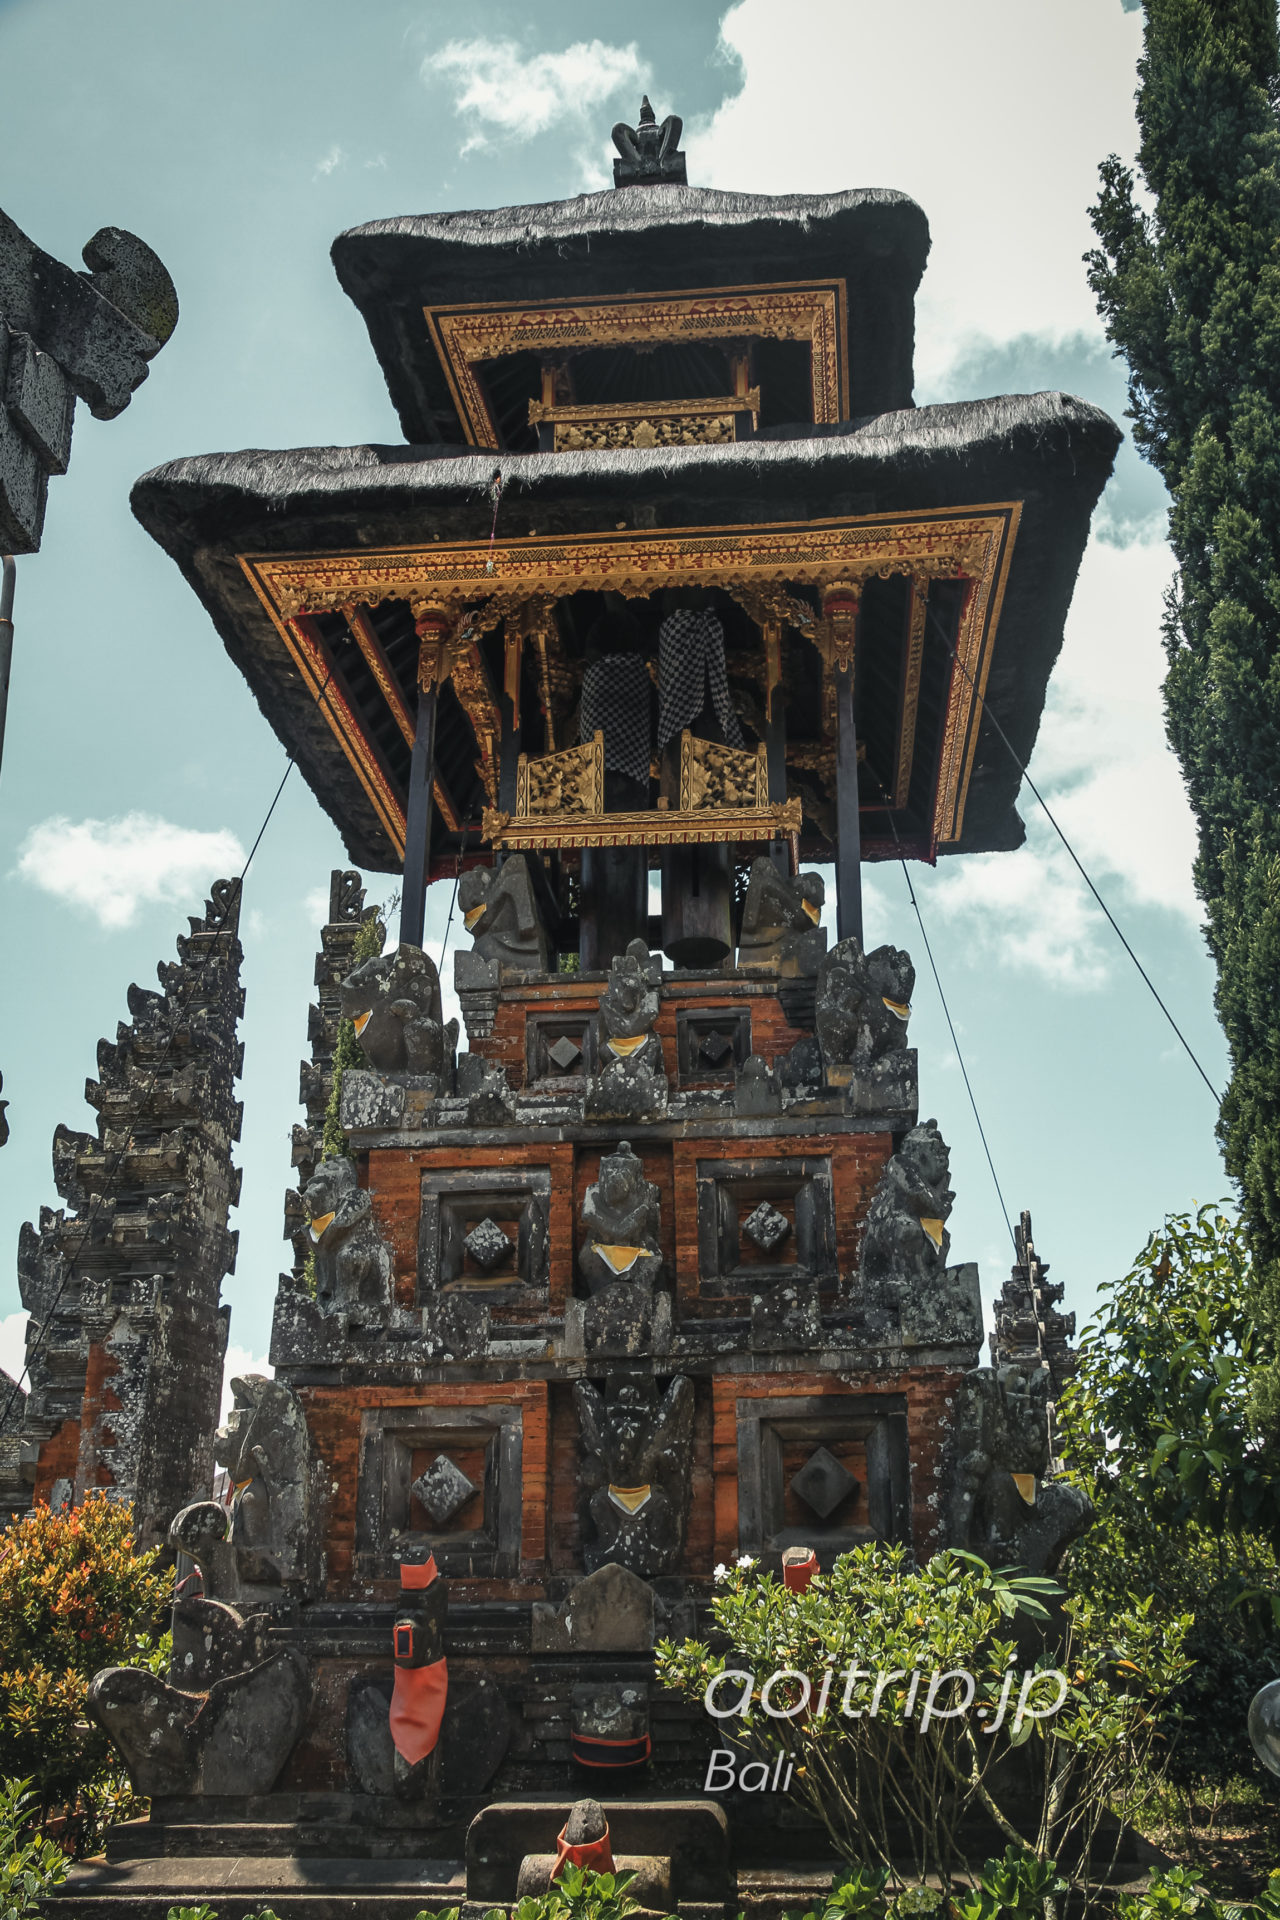 ウルン ダヌ バトゥール寺院｜Pura Ulun Danu Batur, Bali